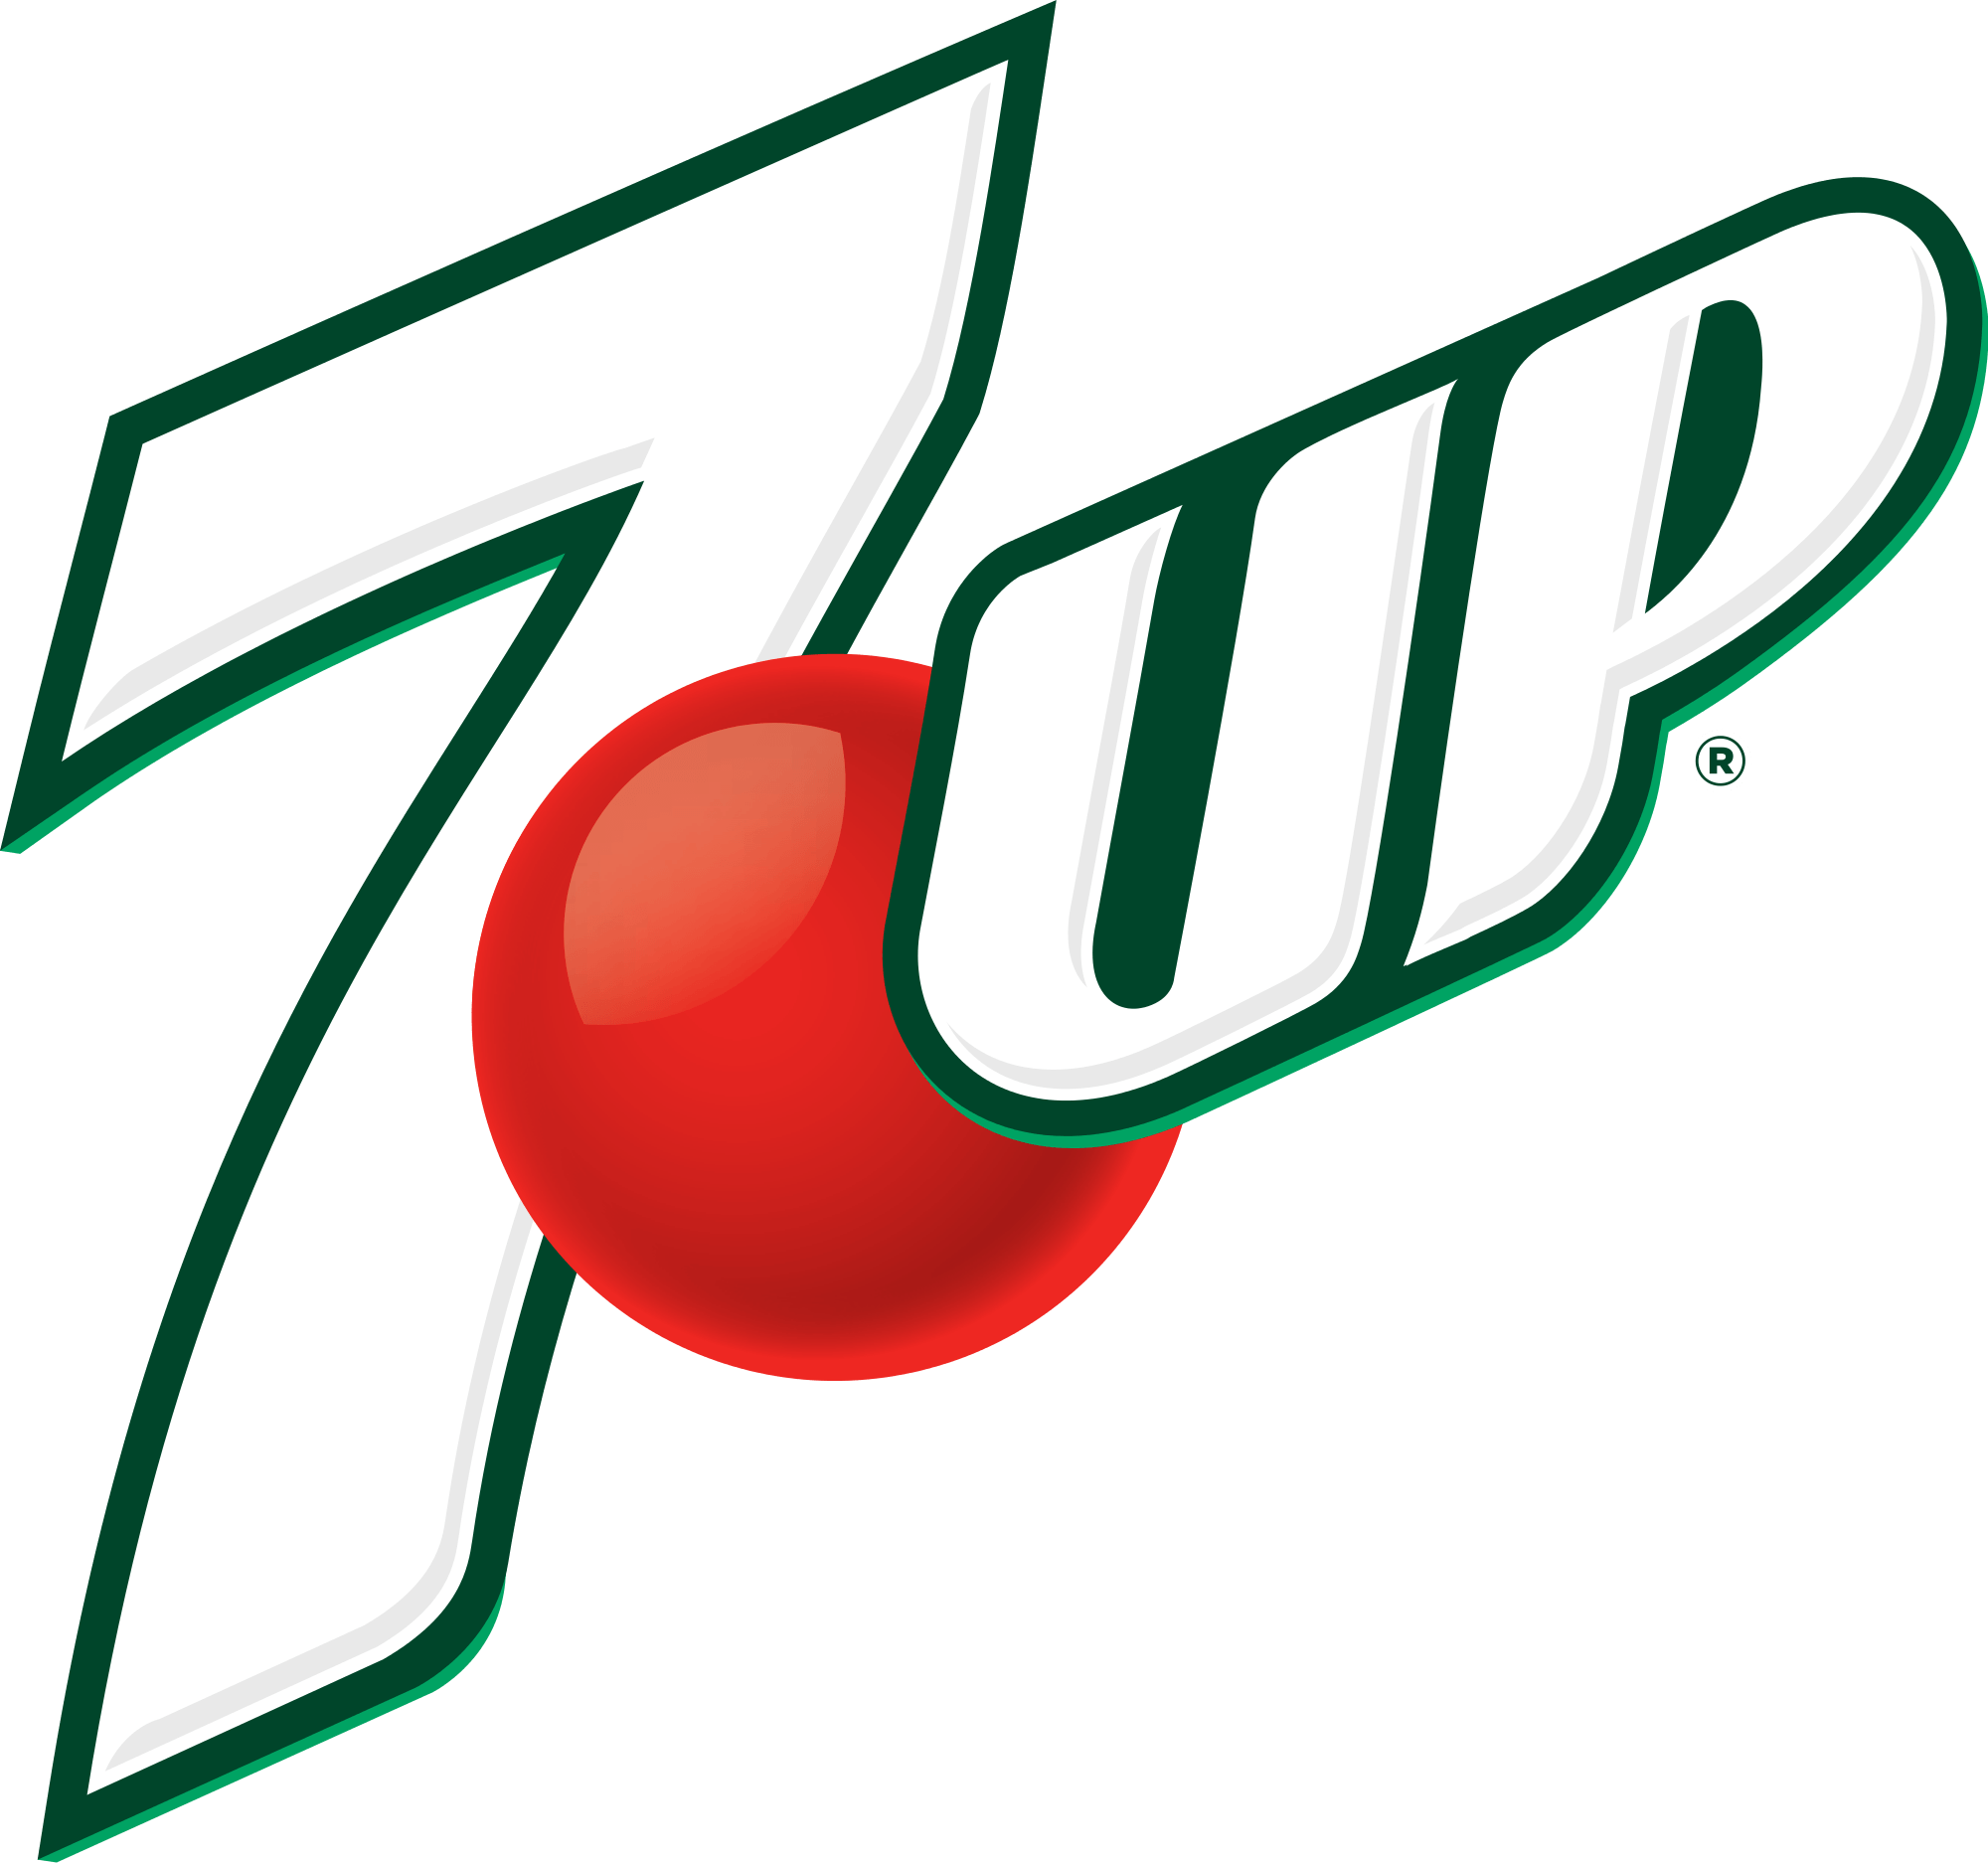 Soda Brand Logo - 7 Up